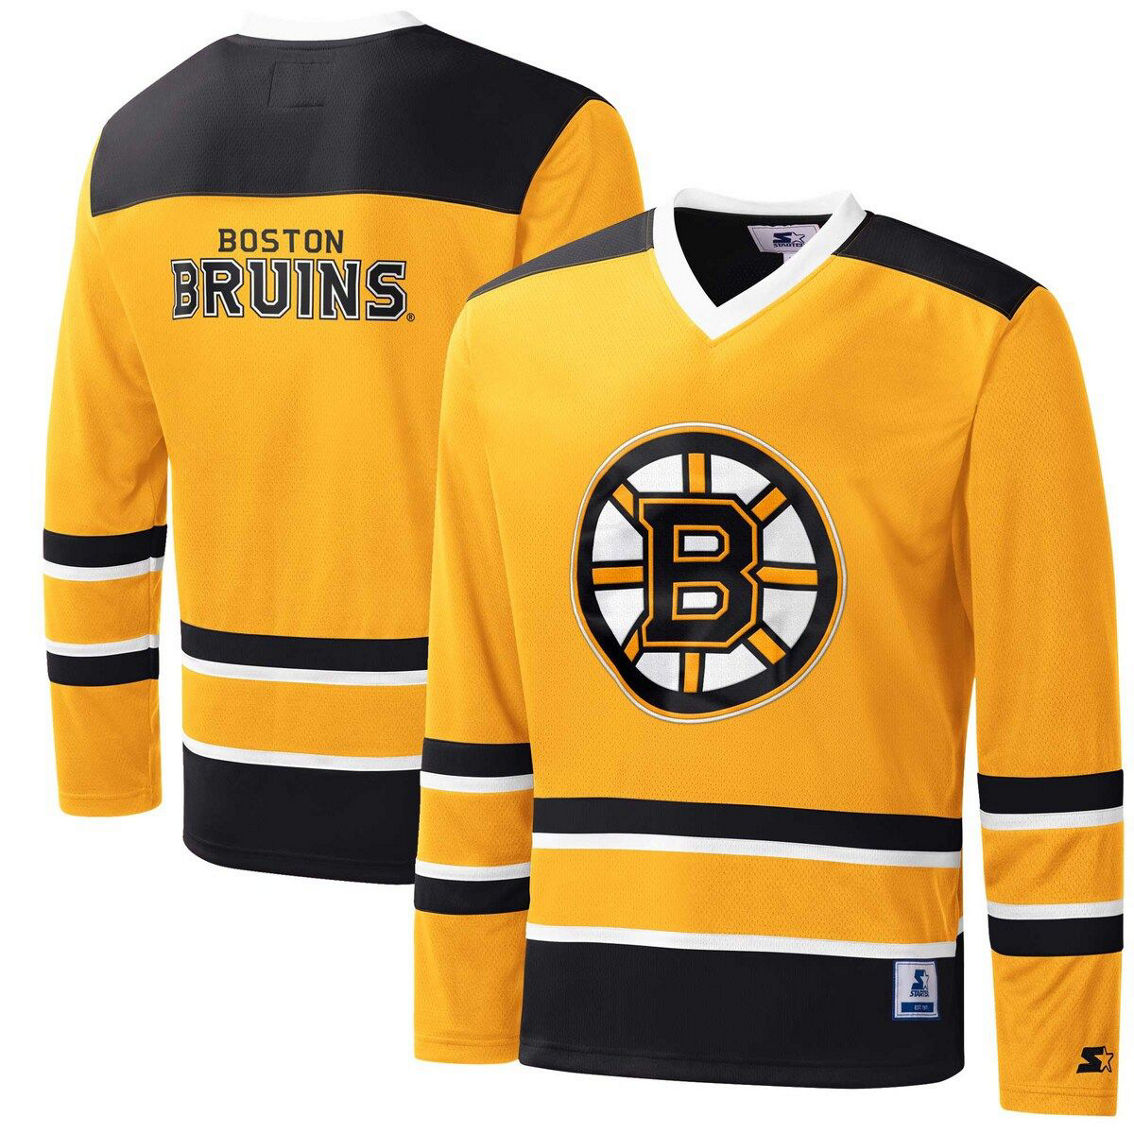 Starter Men's Gold/Black Boston Bruins Cross Check Jersey V-Neck Long Sleeve T-Shirt - Image 2 of 4